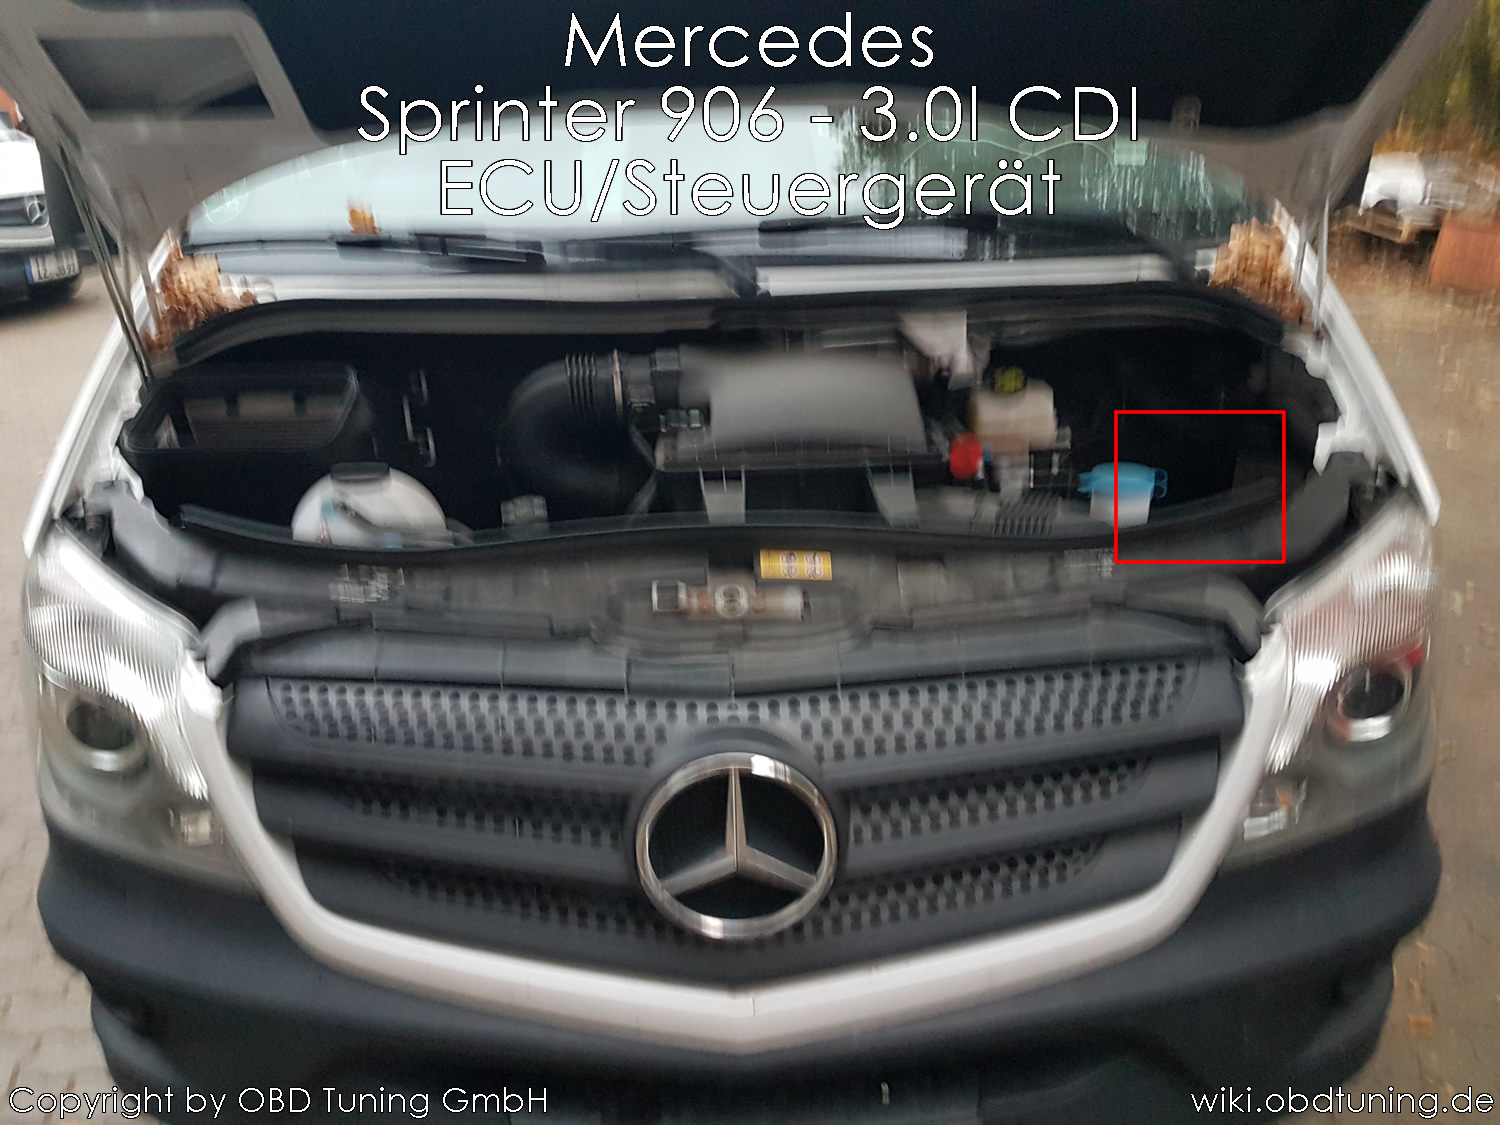 Datei:Mercedes Sprinter 906 30lCDI ECU 01.jpg